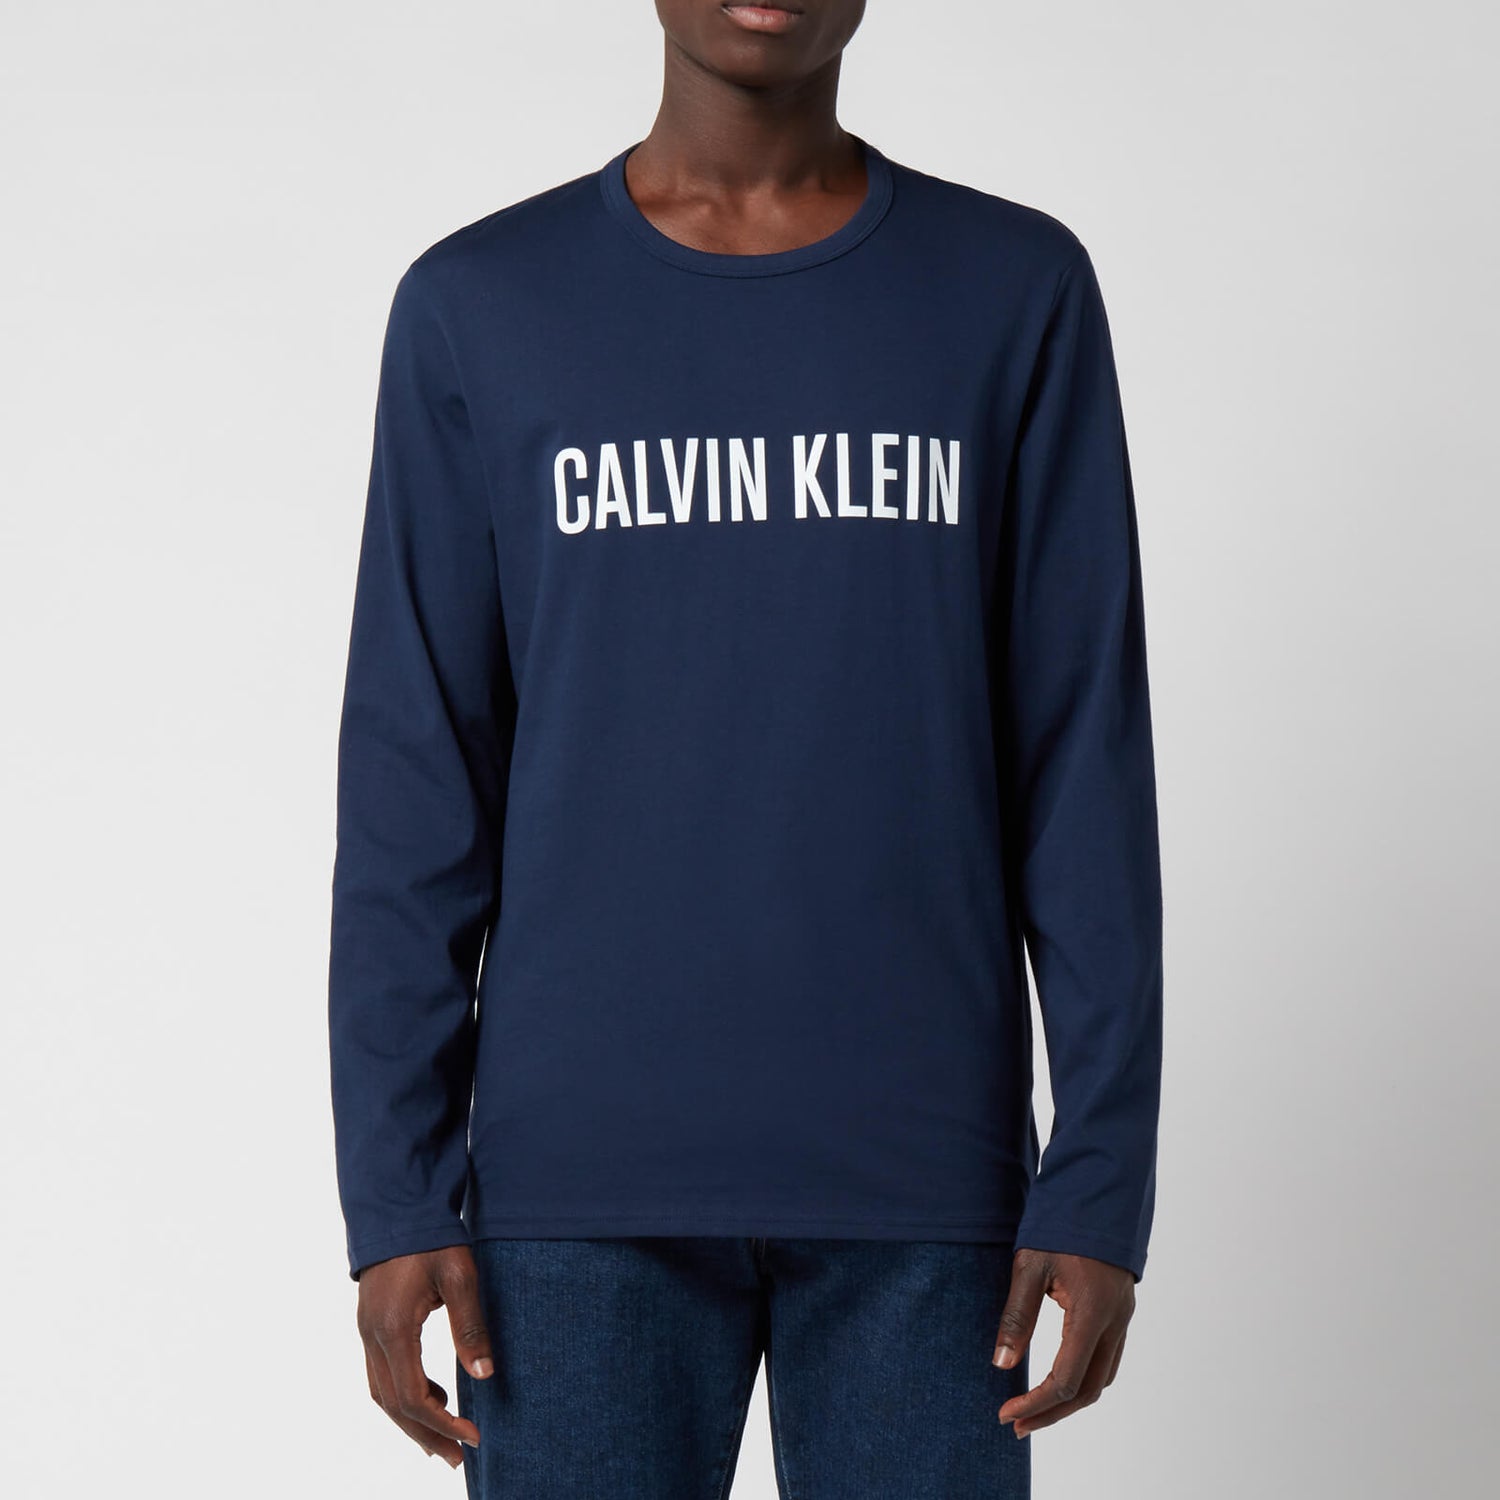 Calvin Klein Men's Long Sleeve Logo Top - Blue Shadow/White